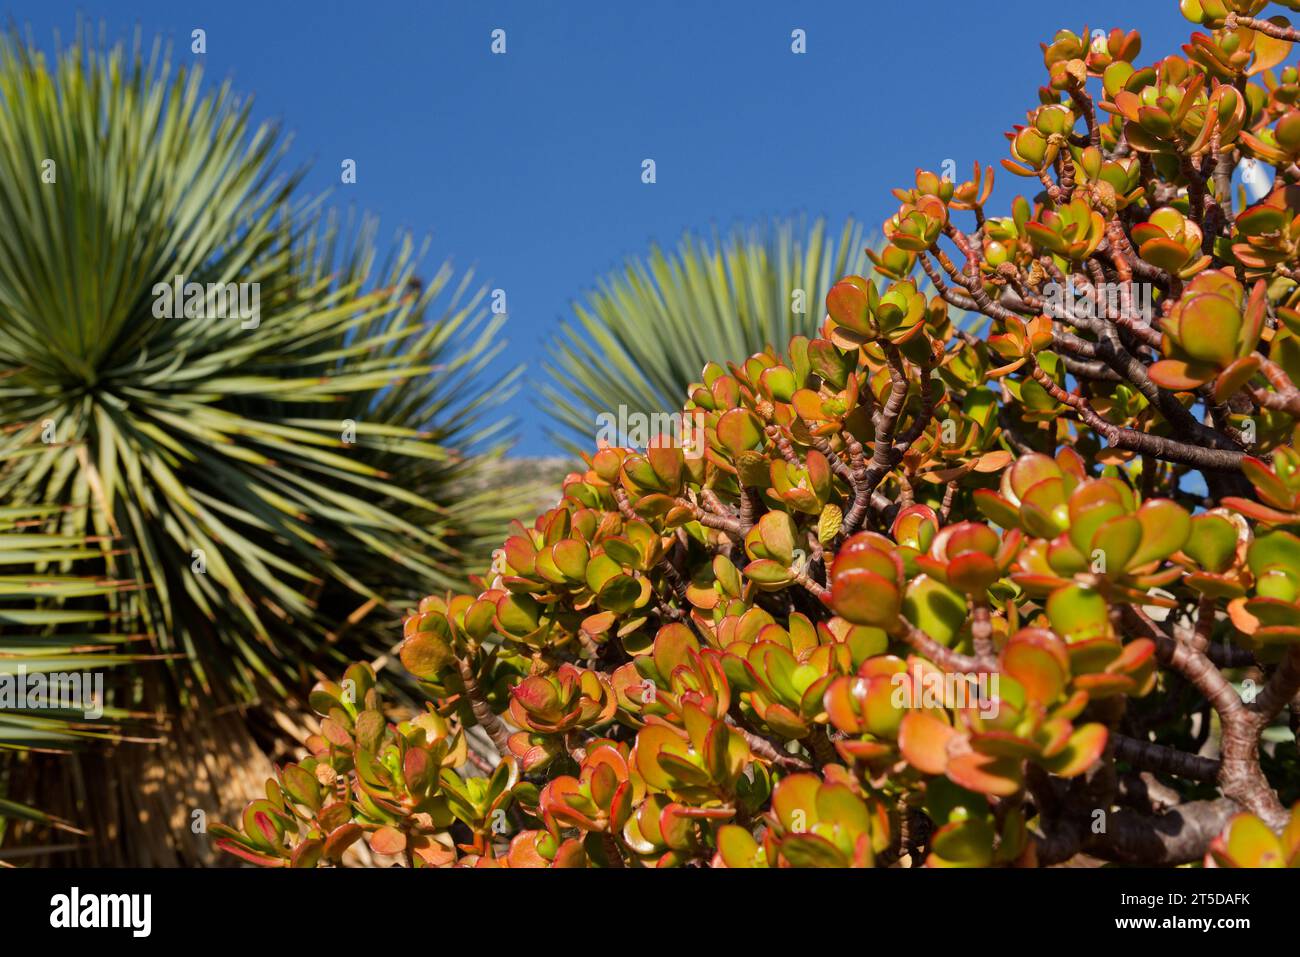 série sur les variétés de plantes grasses et cactus -  series on varieties of succulents and cacti Stock Photo